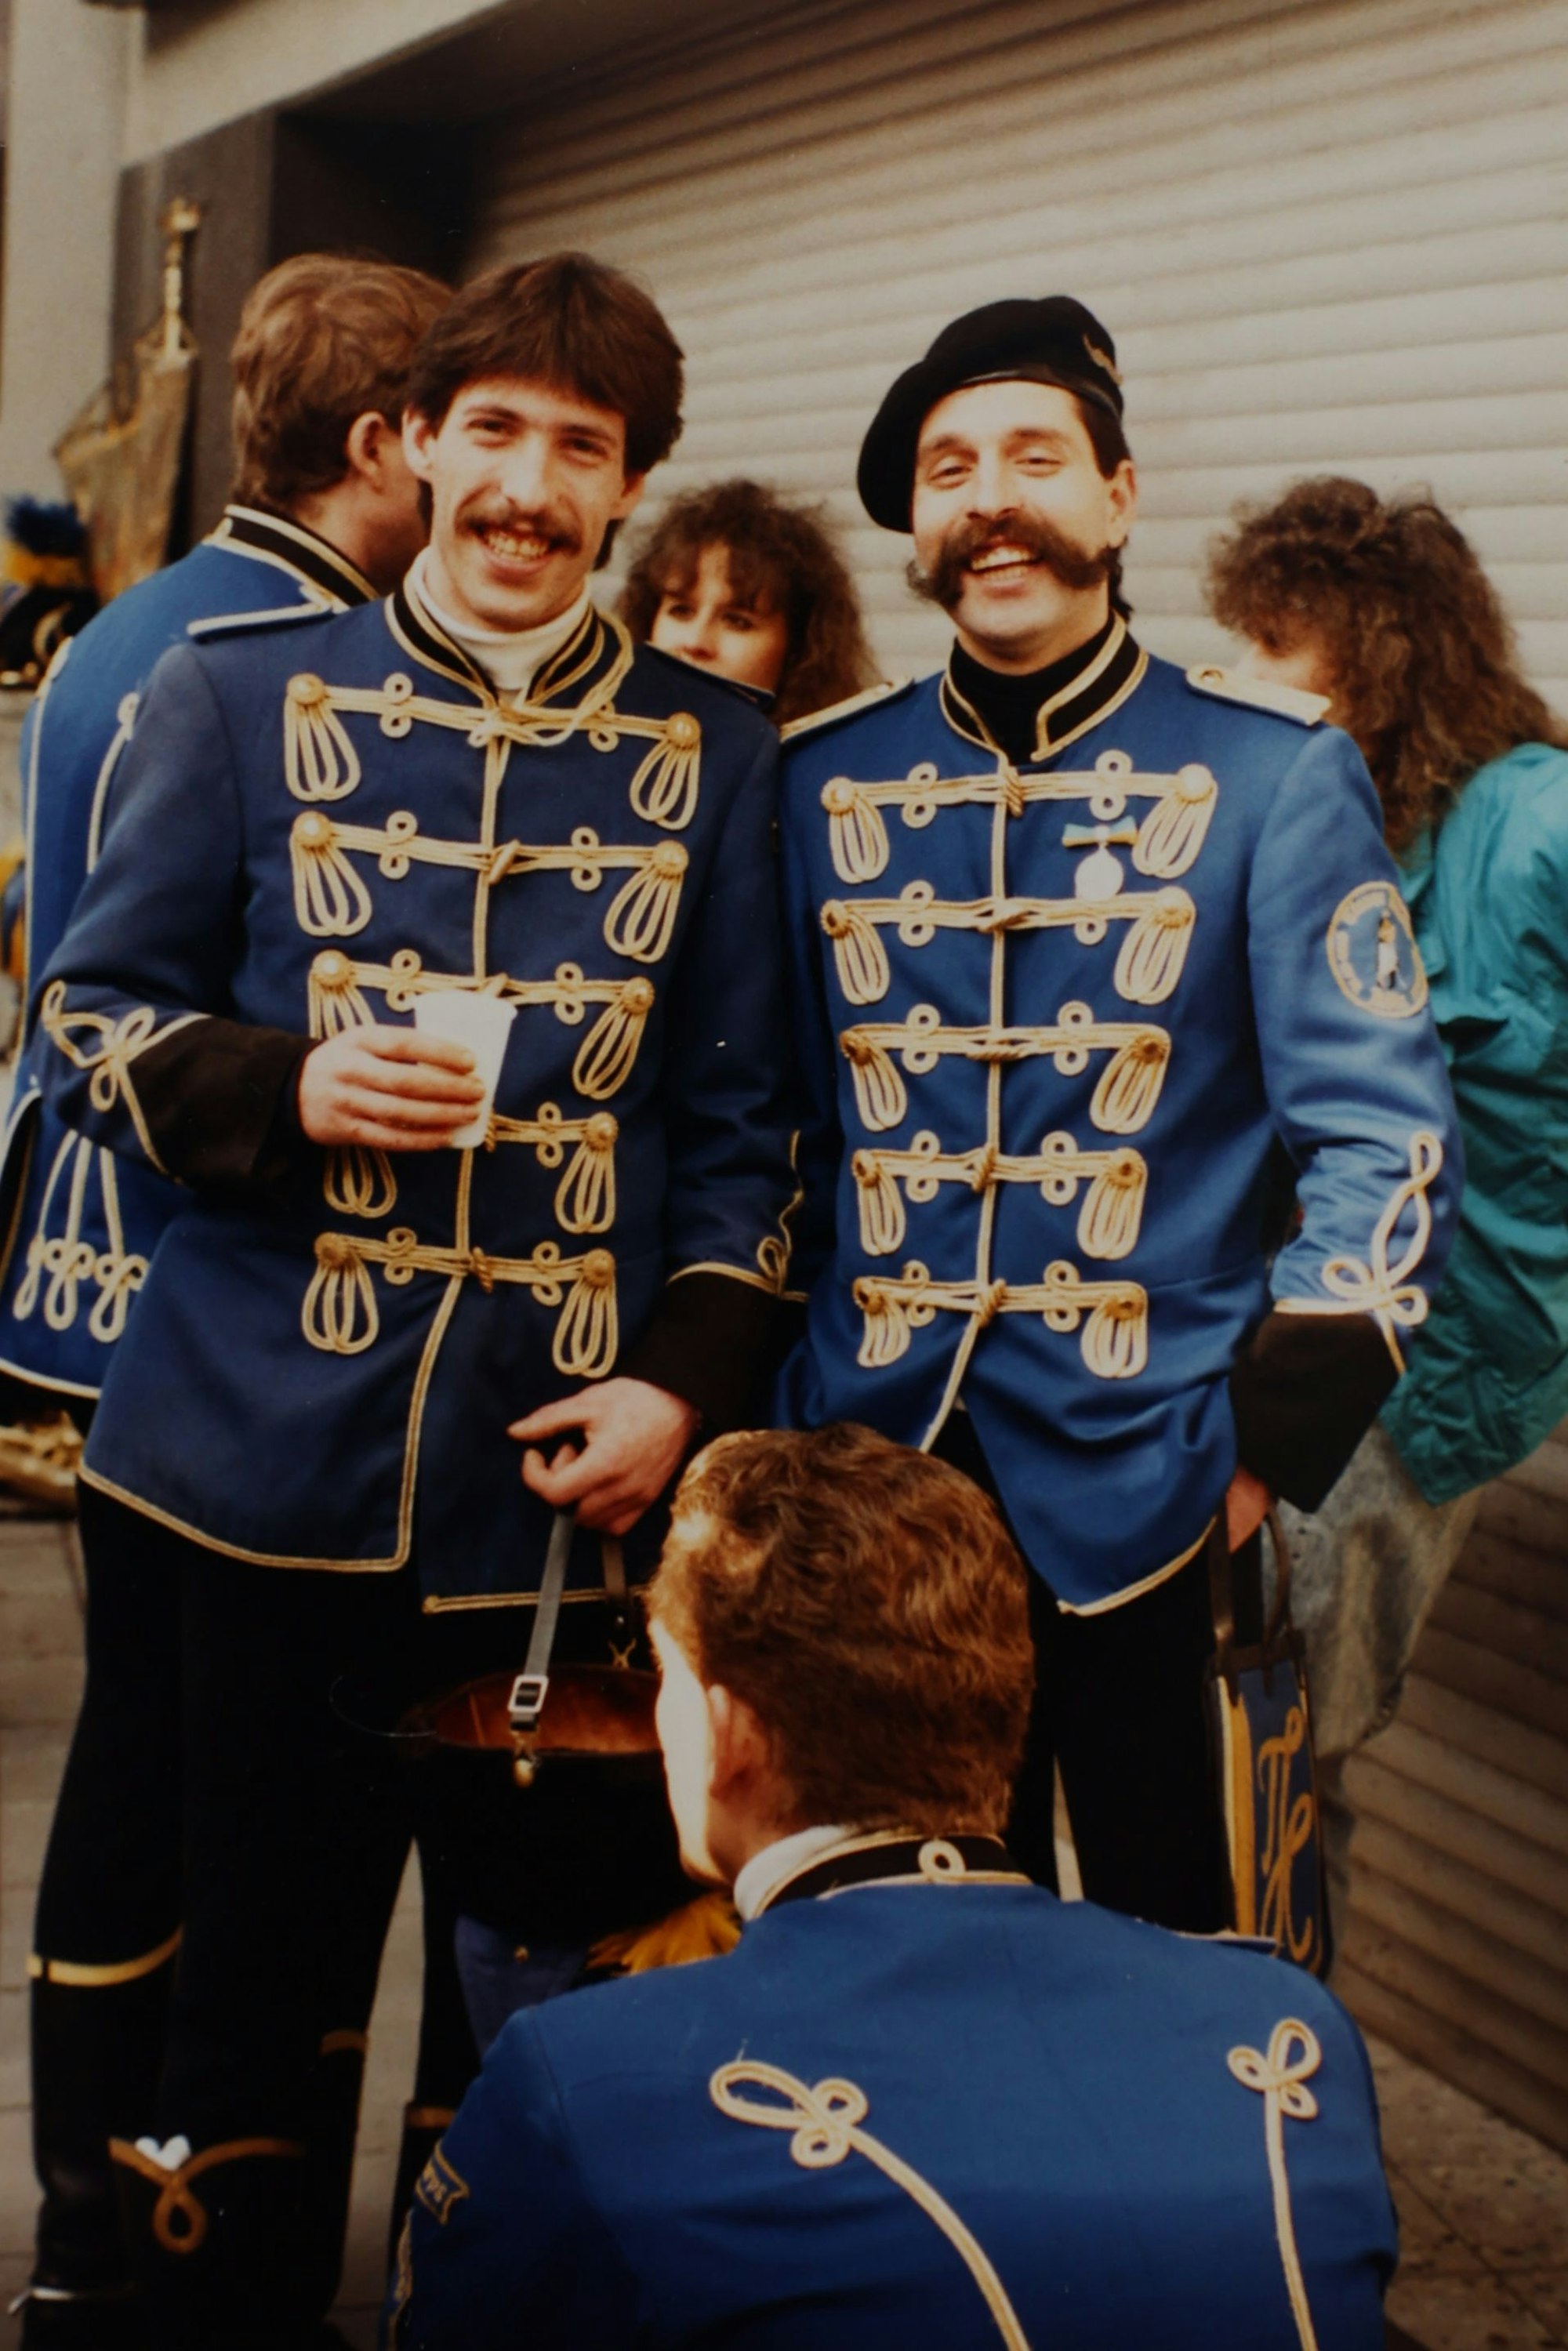 Friedrich und Werner Klupsch als junge Männer in Uniform.